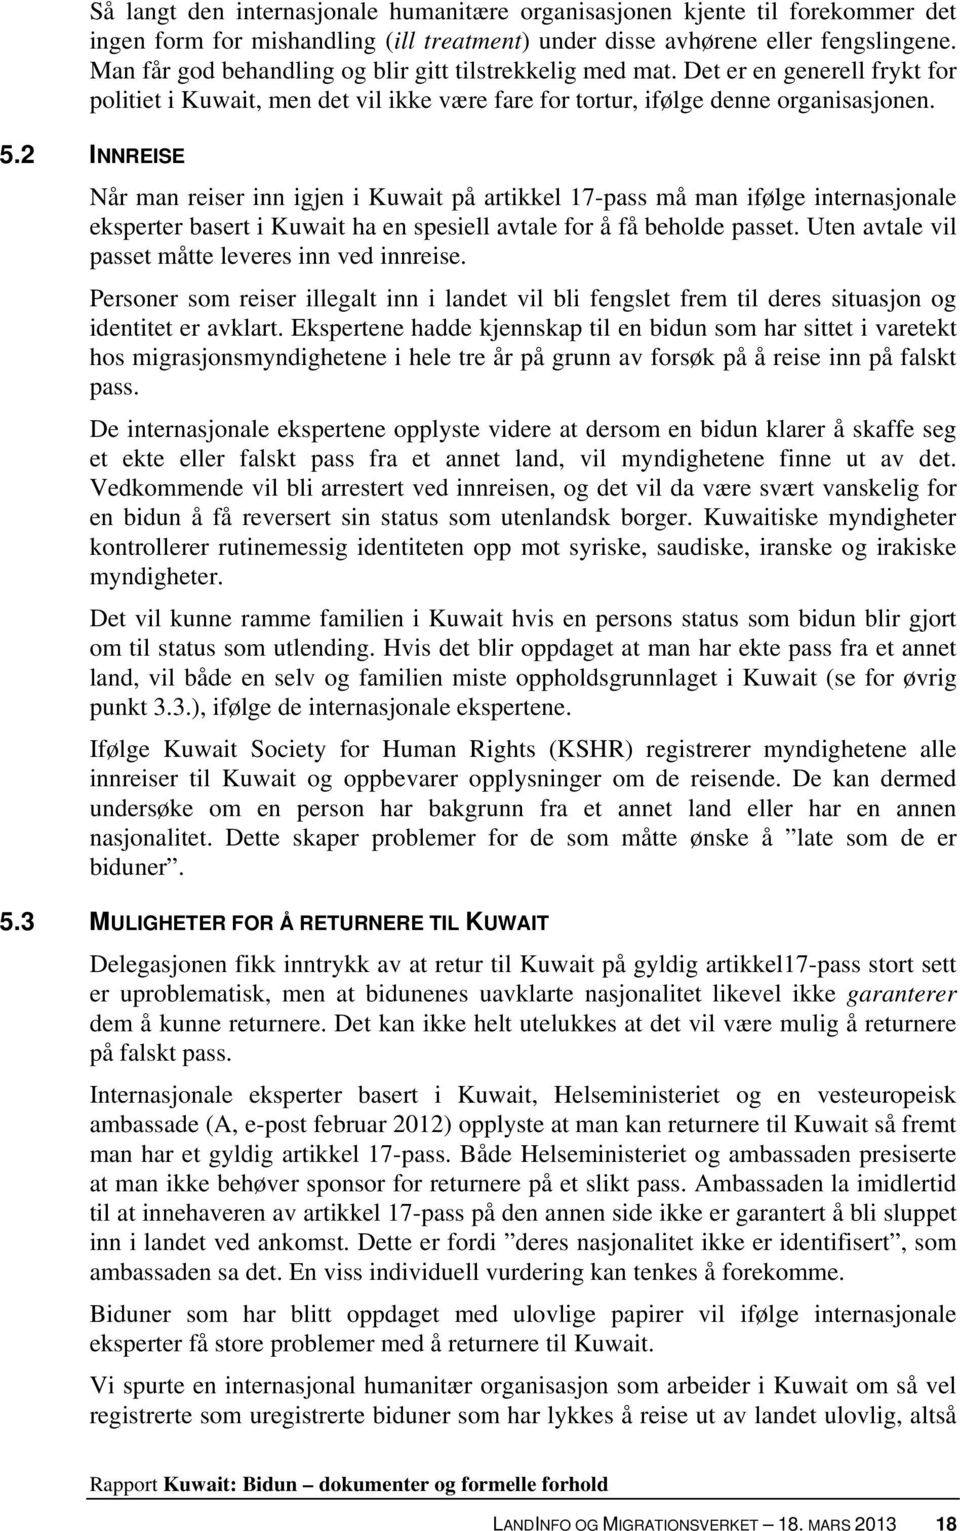 2 INNREISE Når man reiser inn igjen i Kuwait på artikkel 17-pass må man ifølge internasjonale eksperter basert i Kuwait ha en spesiell avtale for å få beholde passet.